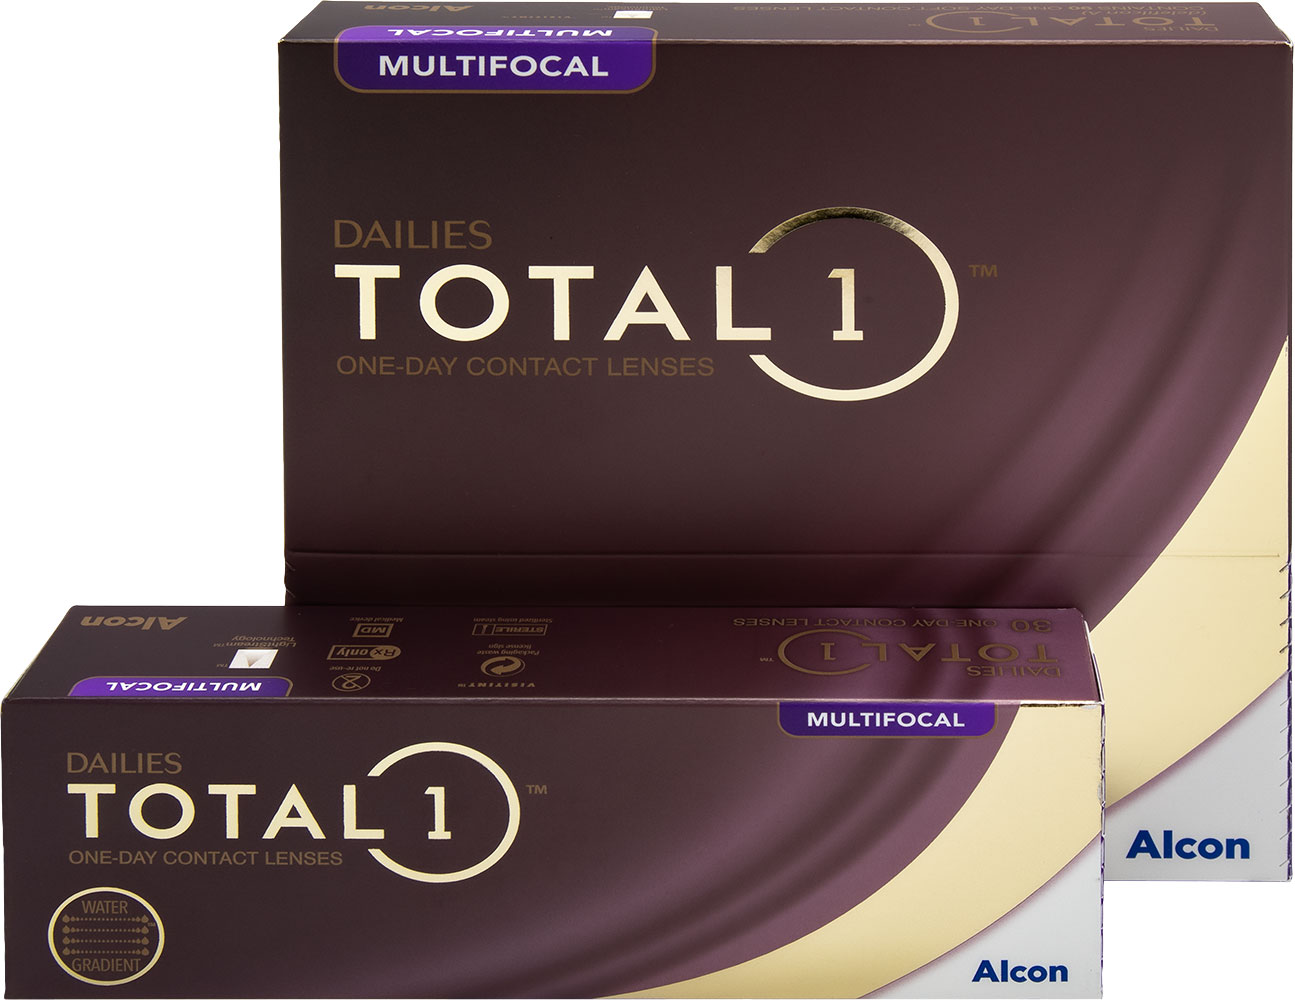 Dailies Total1 Multifocal -piilolinssejä myydään 30 ja 90 linssin pakkauksissa. Osa jälleenmyyjistä myy 
näitä linssejä myös 2 x 90 eli 180 linssin pakkauksissa.